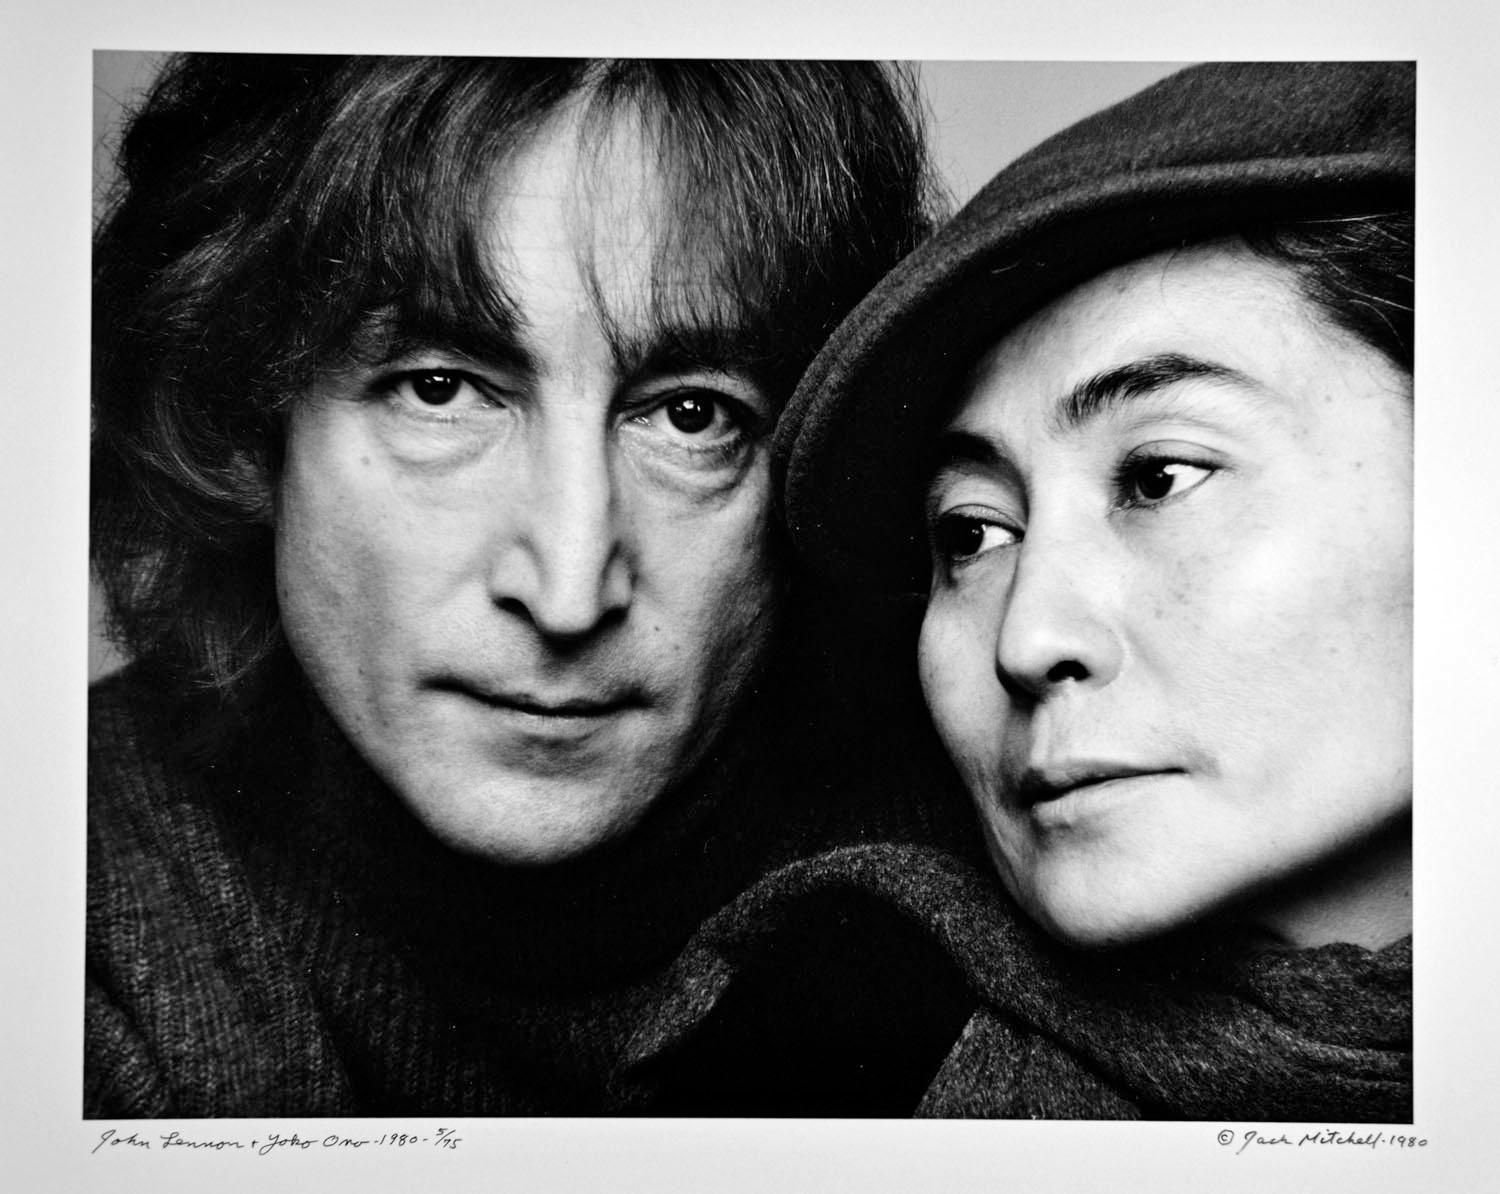 John Lennon und Yoko Ono fotografierten am 2. November 1980. Signiert von Jack Mitchell